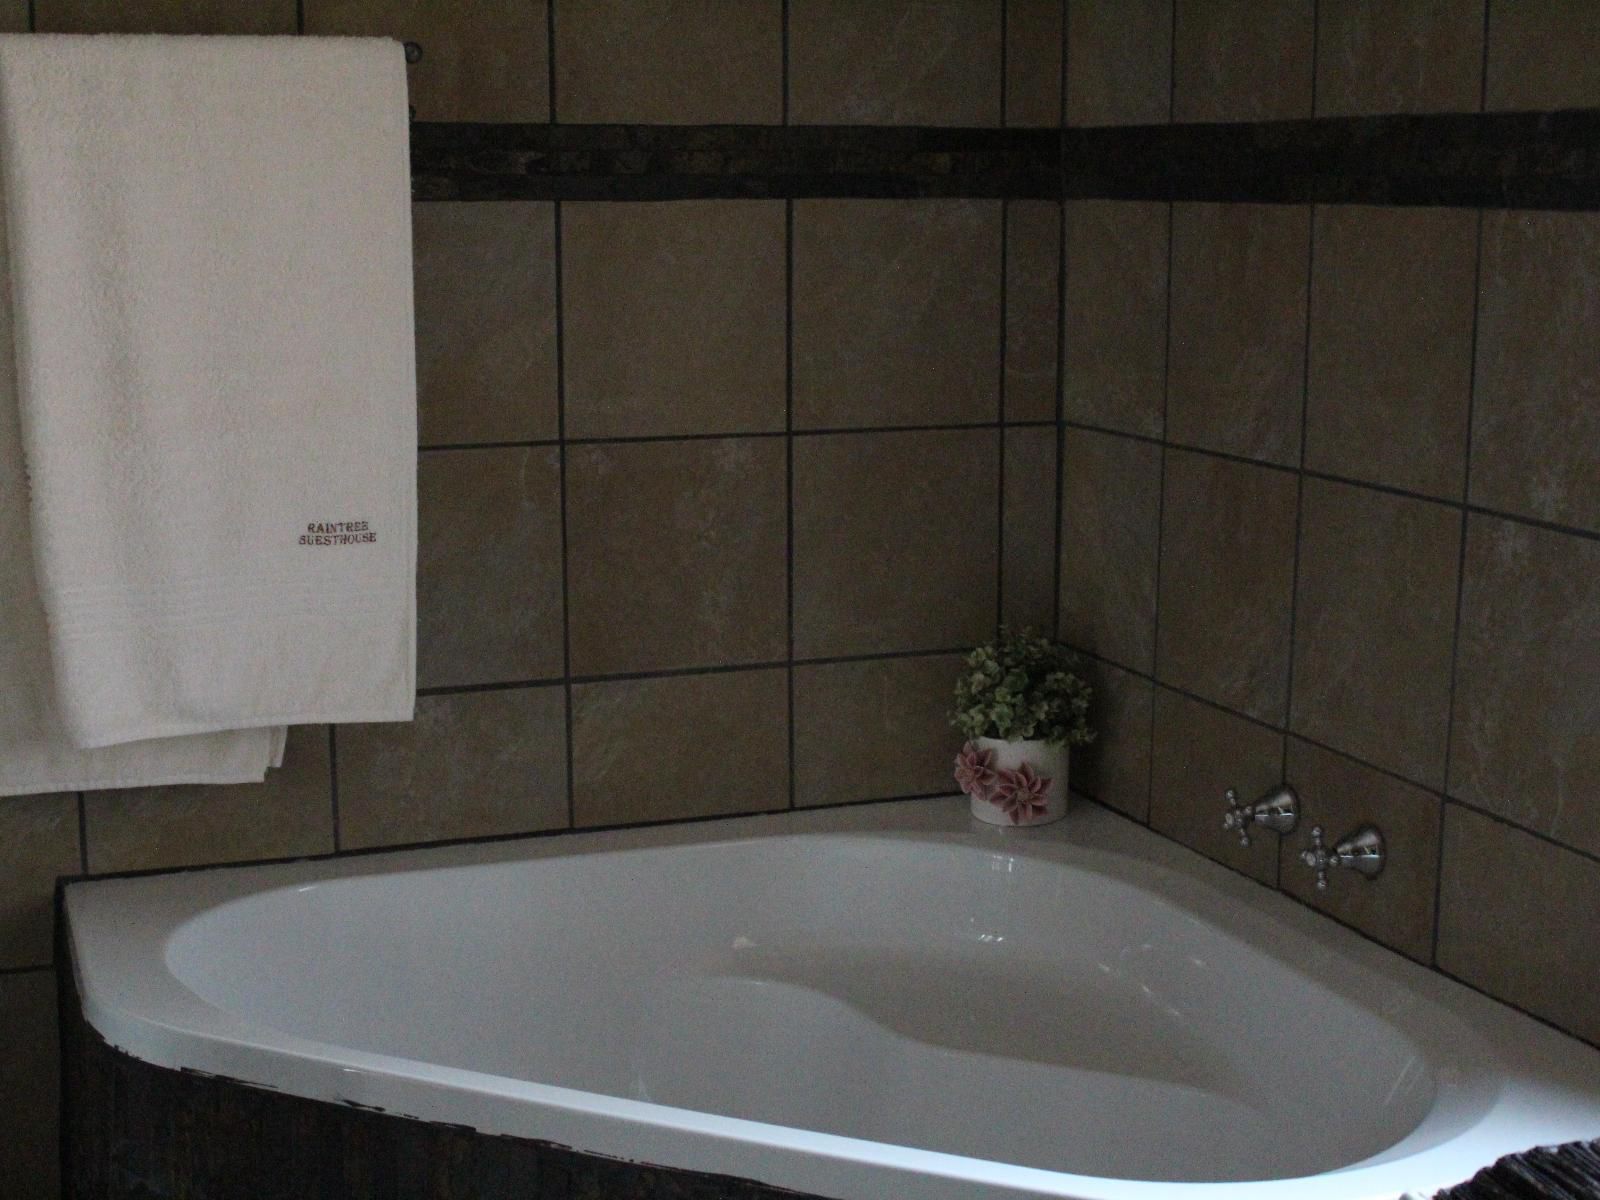 Raintree Guest House Boksburg Johannesburg Gauteng South Africa Bathroom